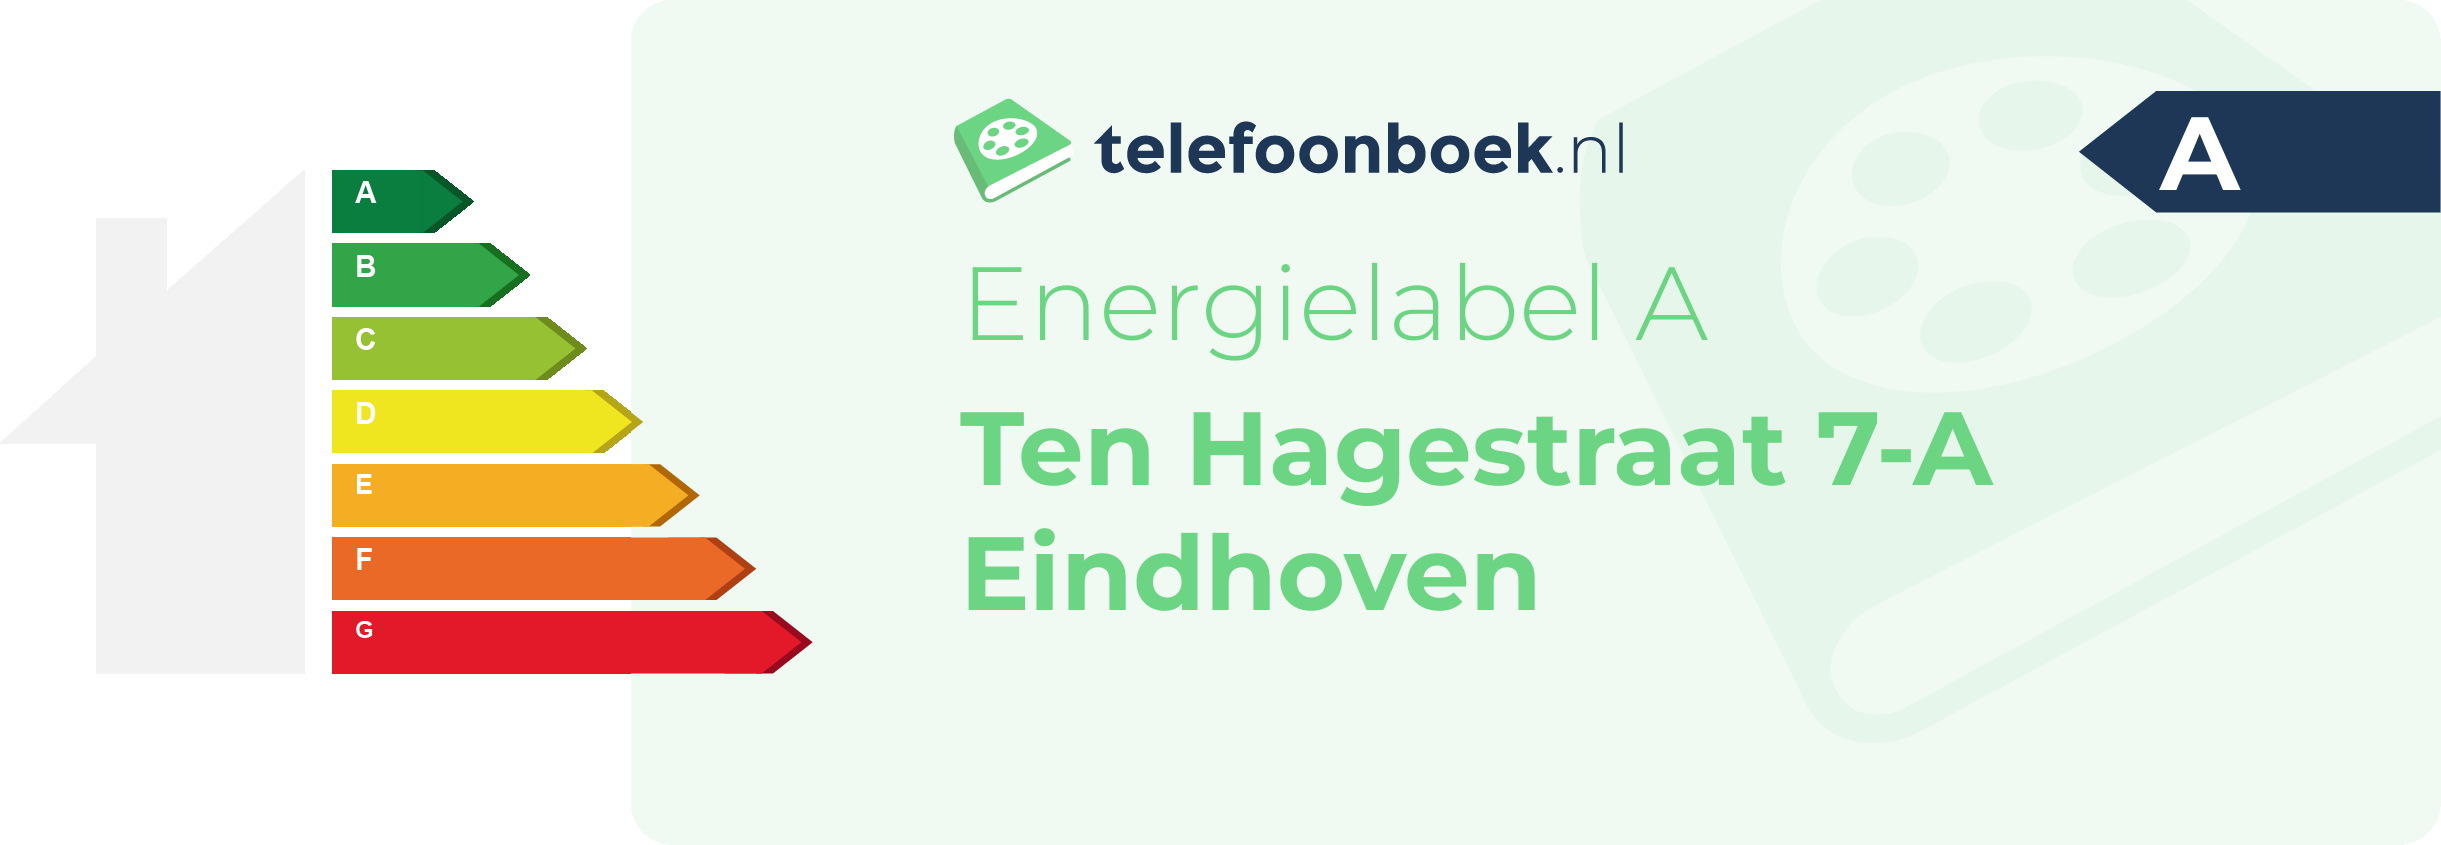 Energielabel Ten Hagestraat 7-A Eindhoven